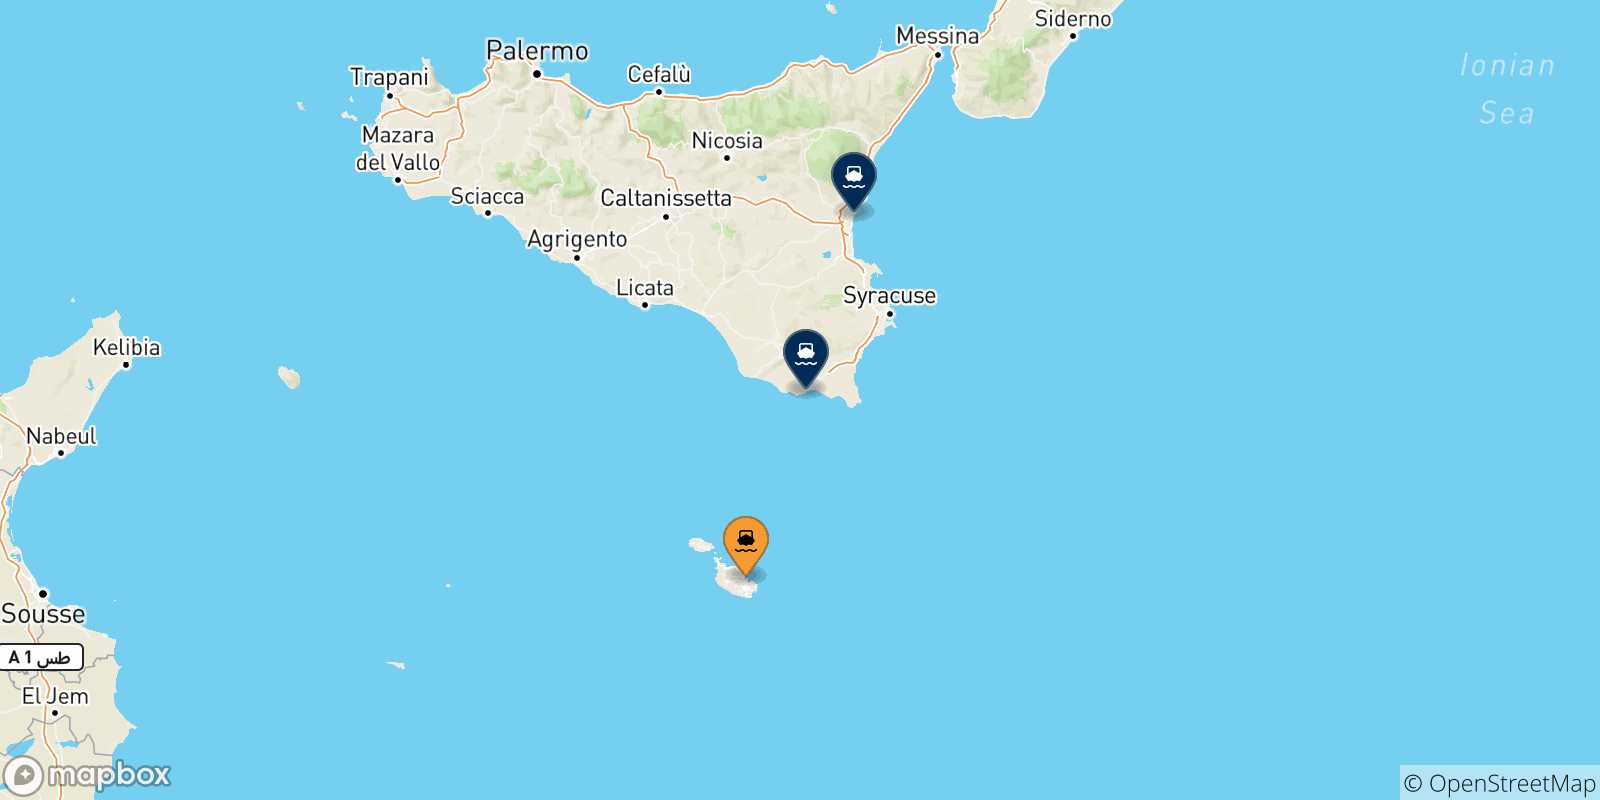 Mappa delle possibili rotte tra La Valletta (Malta) e la Sicilia